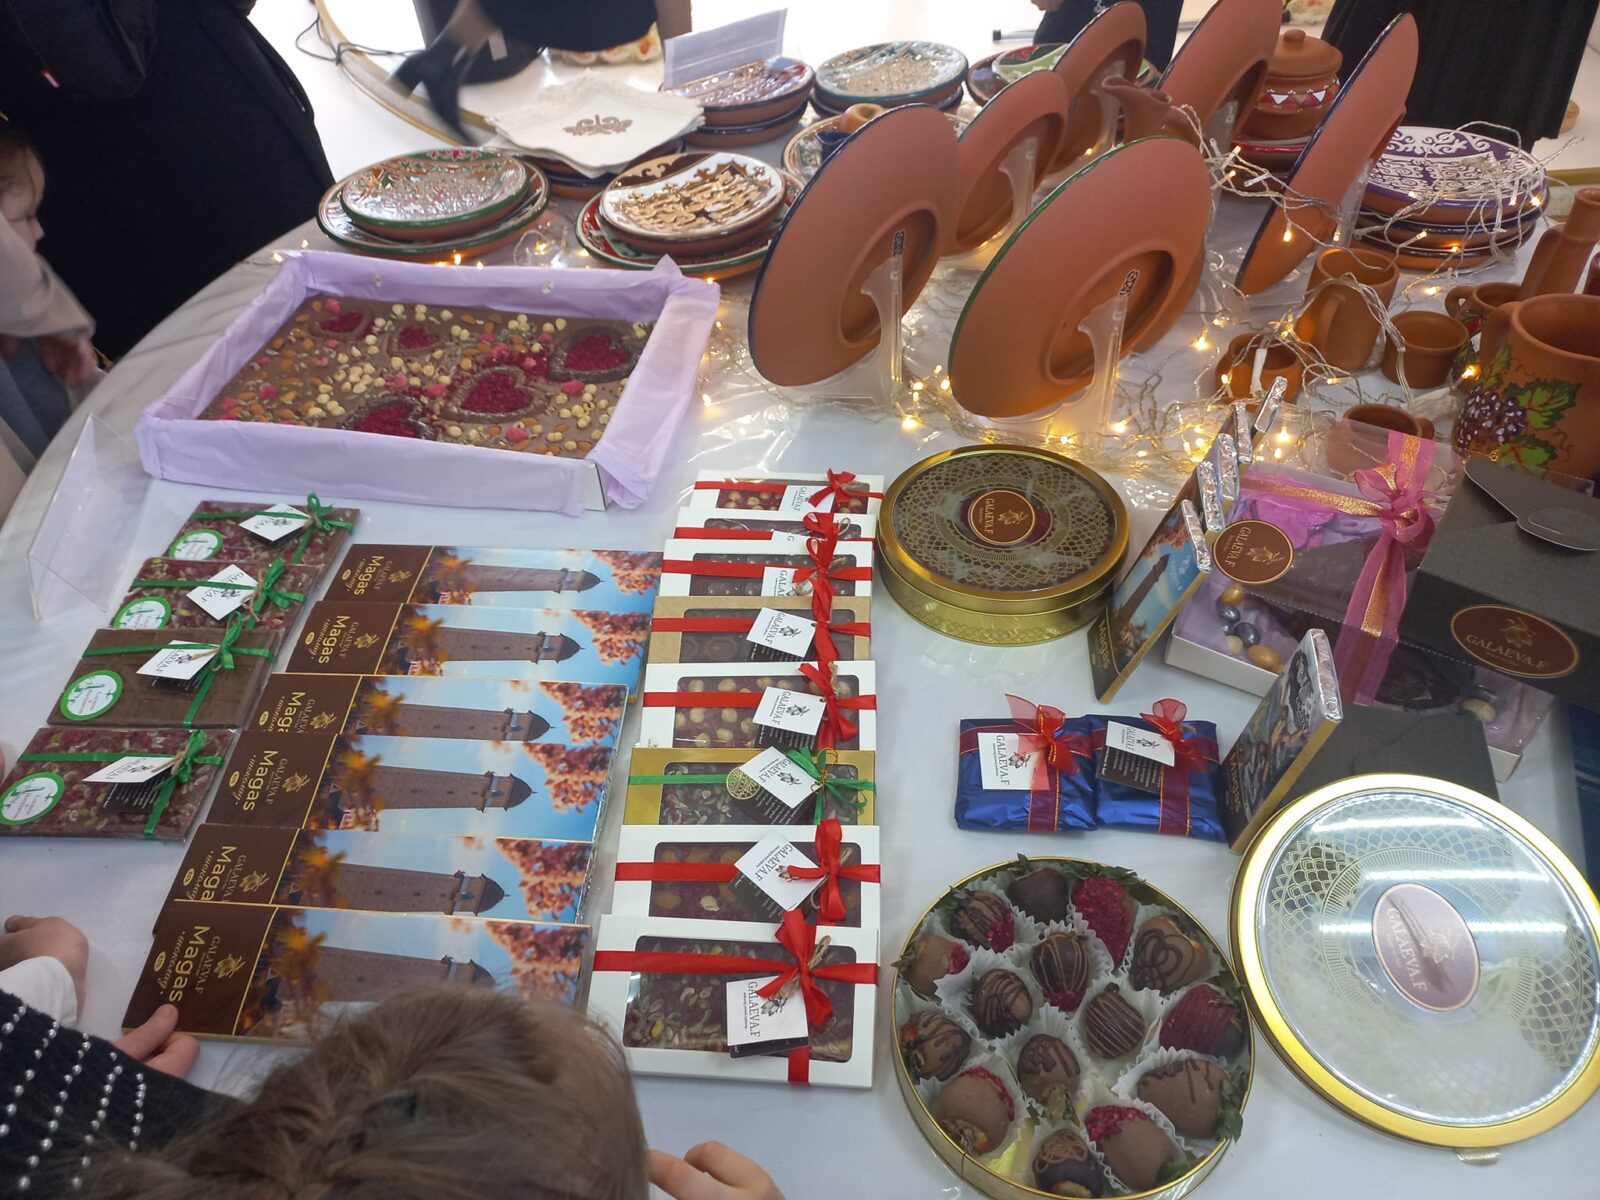 В Назрани состоялся фестиваль искусств «Пхьоале», организованный Ассоциацией «Истинг»